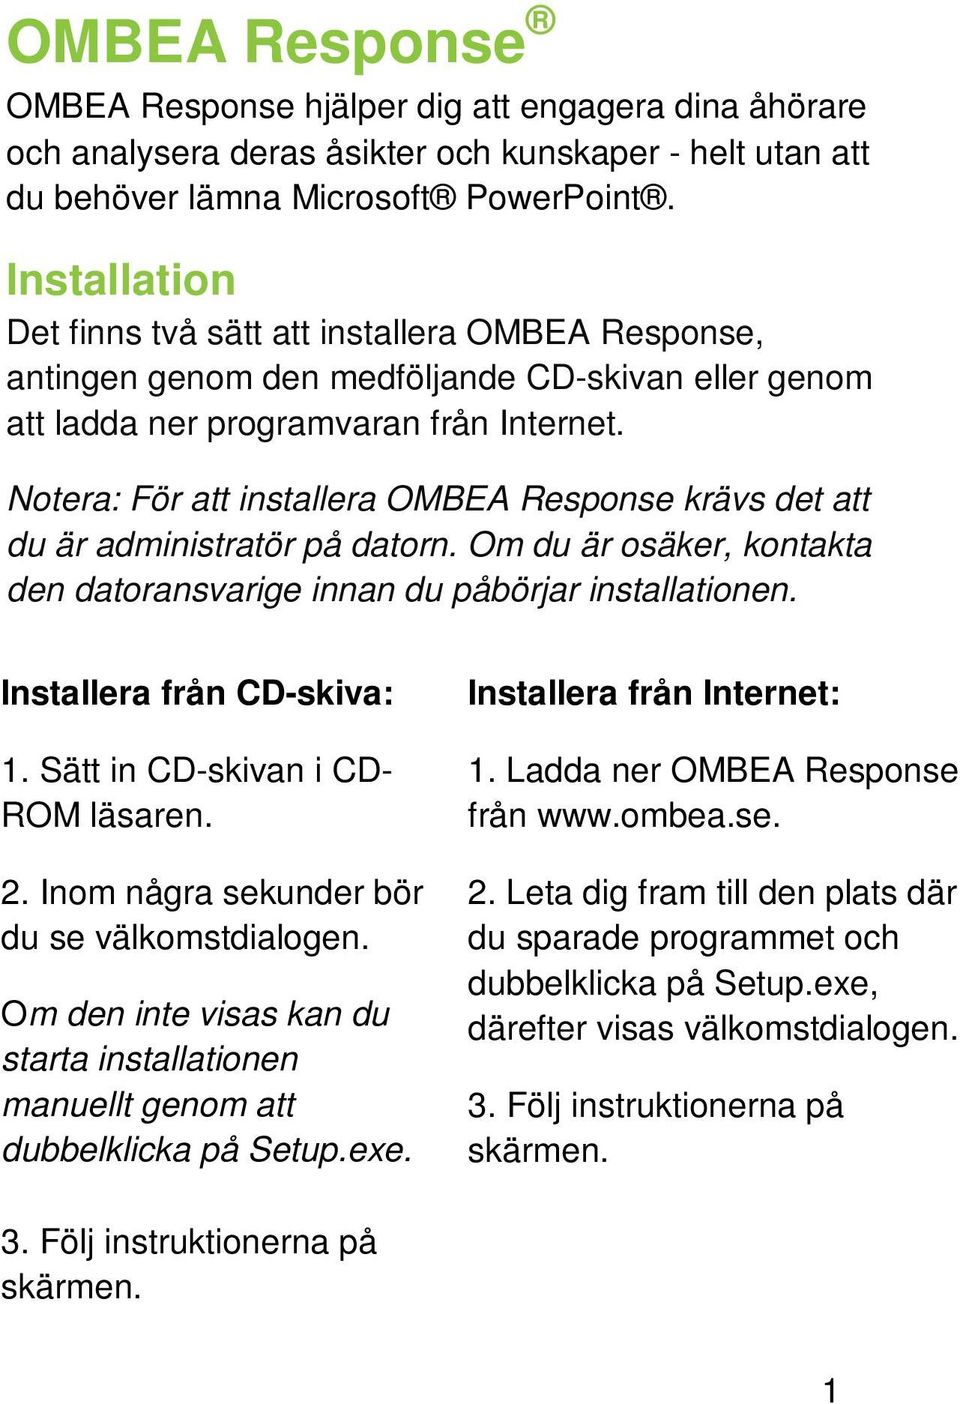 Notera: För att installera OMBEA Response krävs det att du är administratör på datorn. Om du är osäker, kontakta den datoransvarige innan du påbörjar installationen. Installera från CD-skiva: 1.